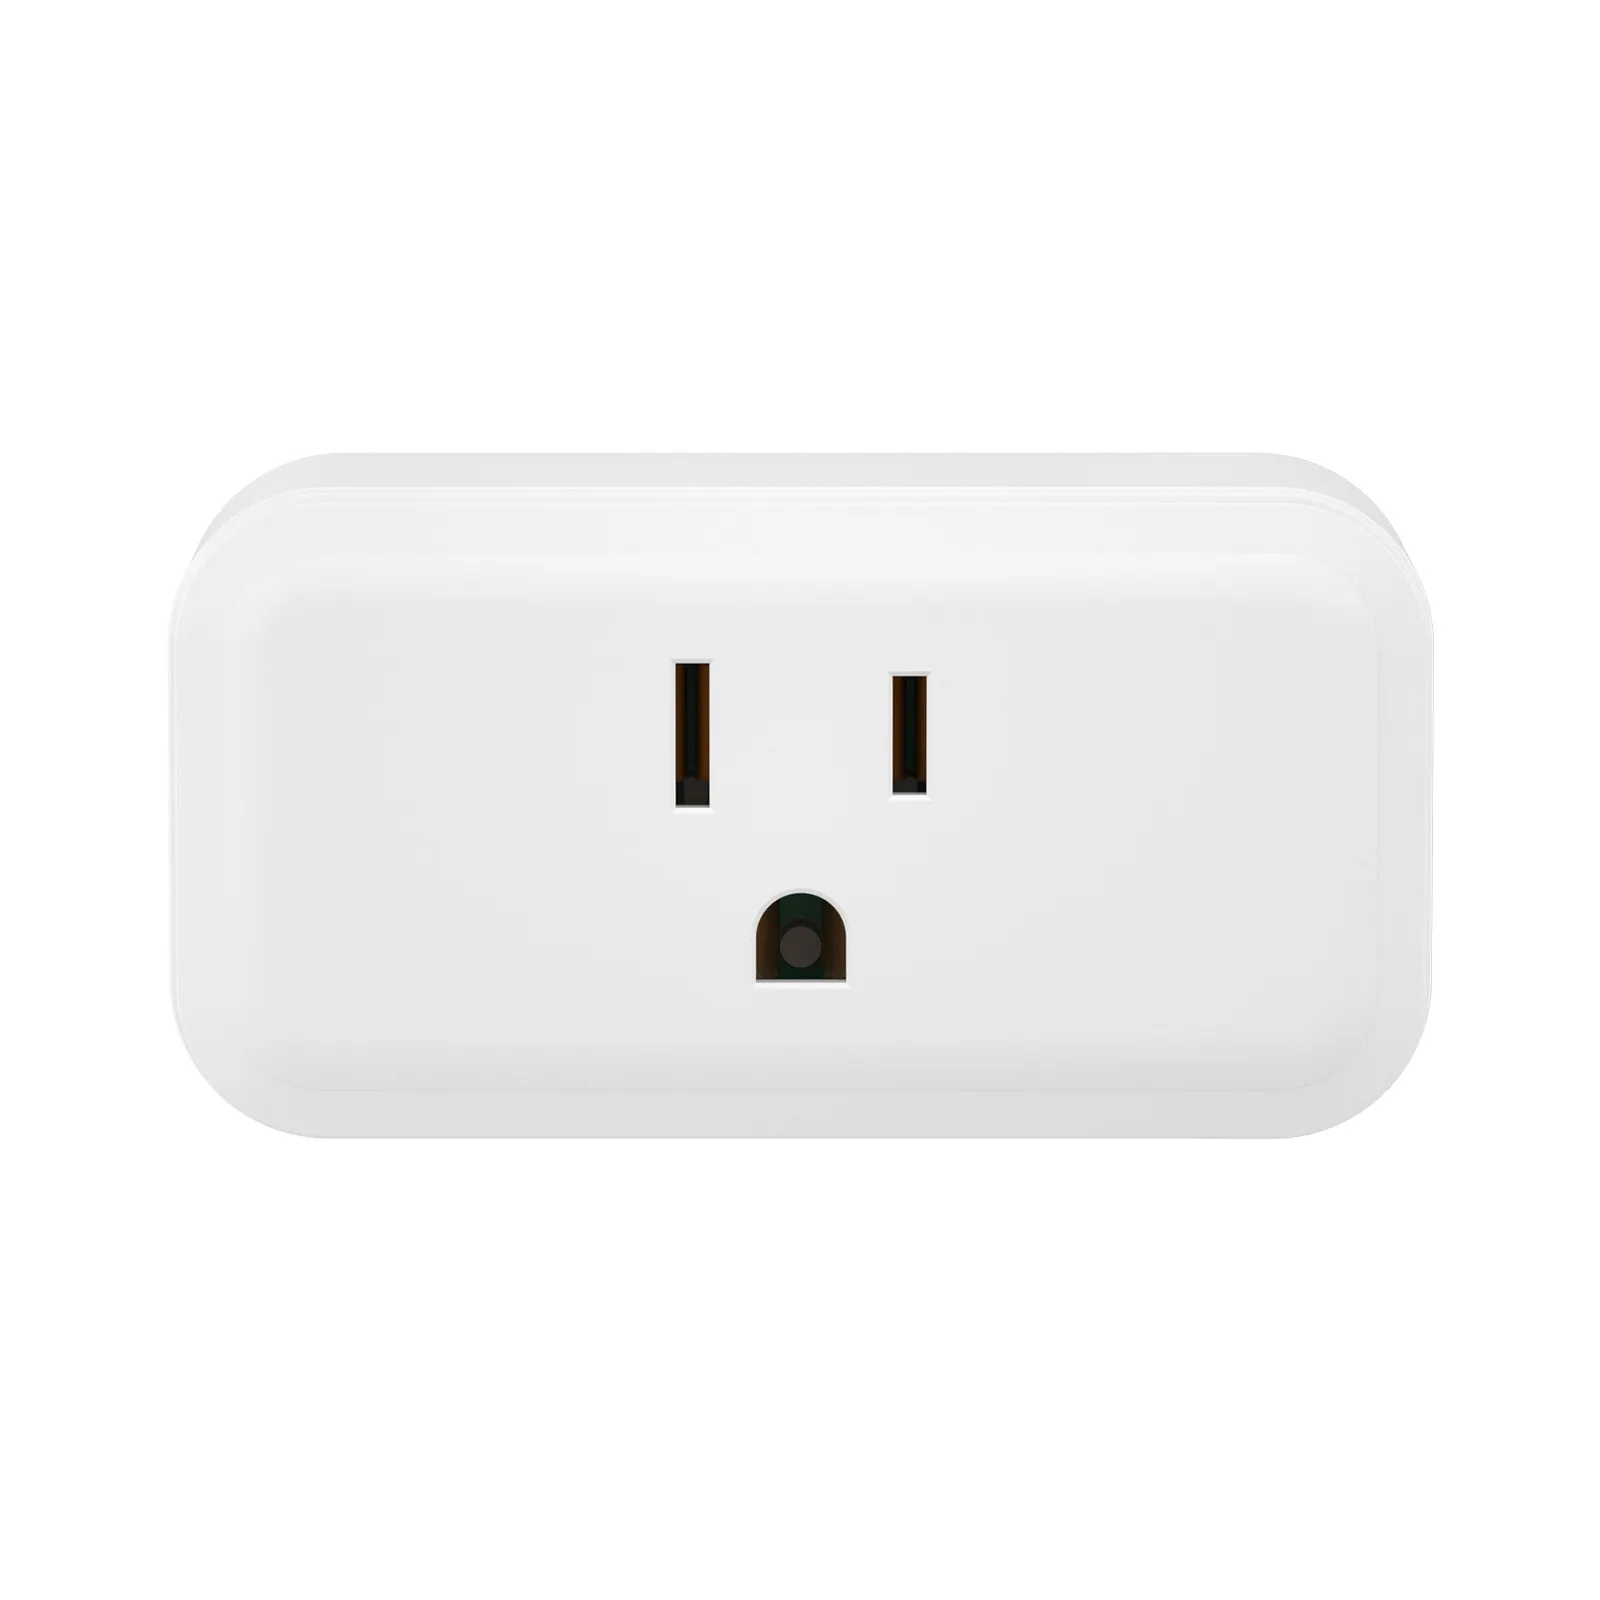 SONOFF Zigbee Smart Plug| iPlug Series S40 Lite 2